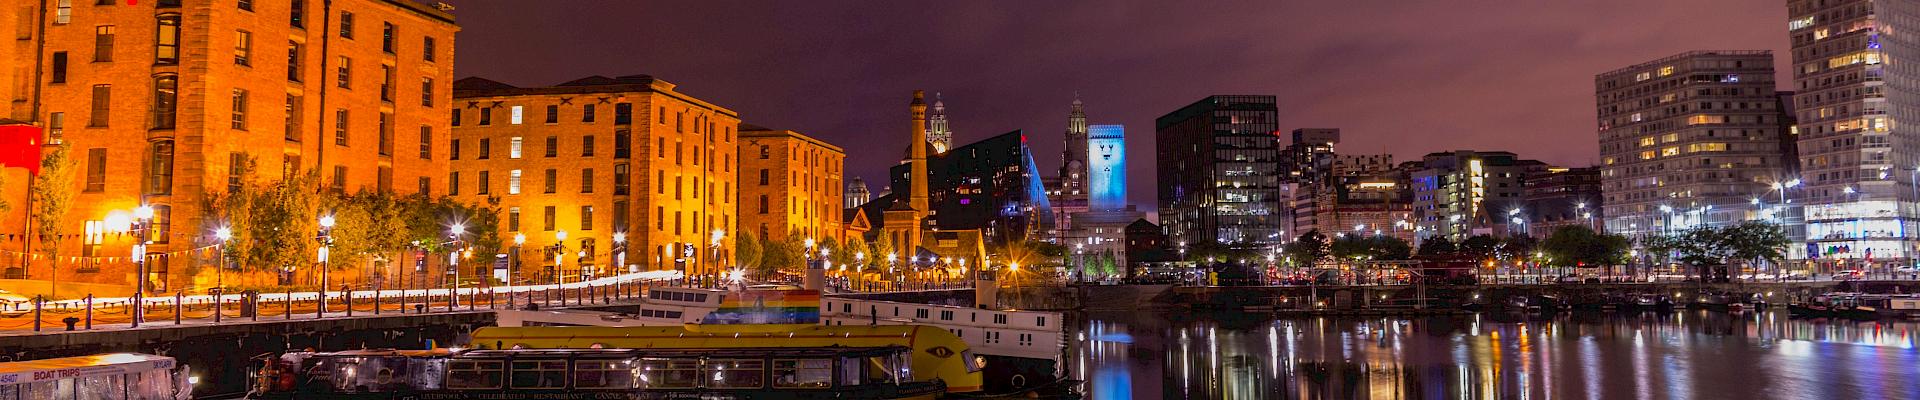 Liverpool : Un étonnant séjour linguistique au pays des Beatles